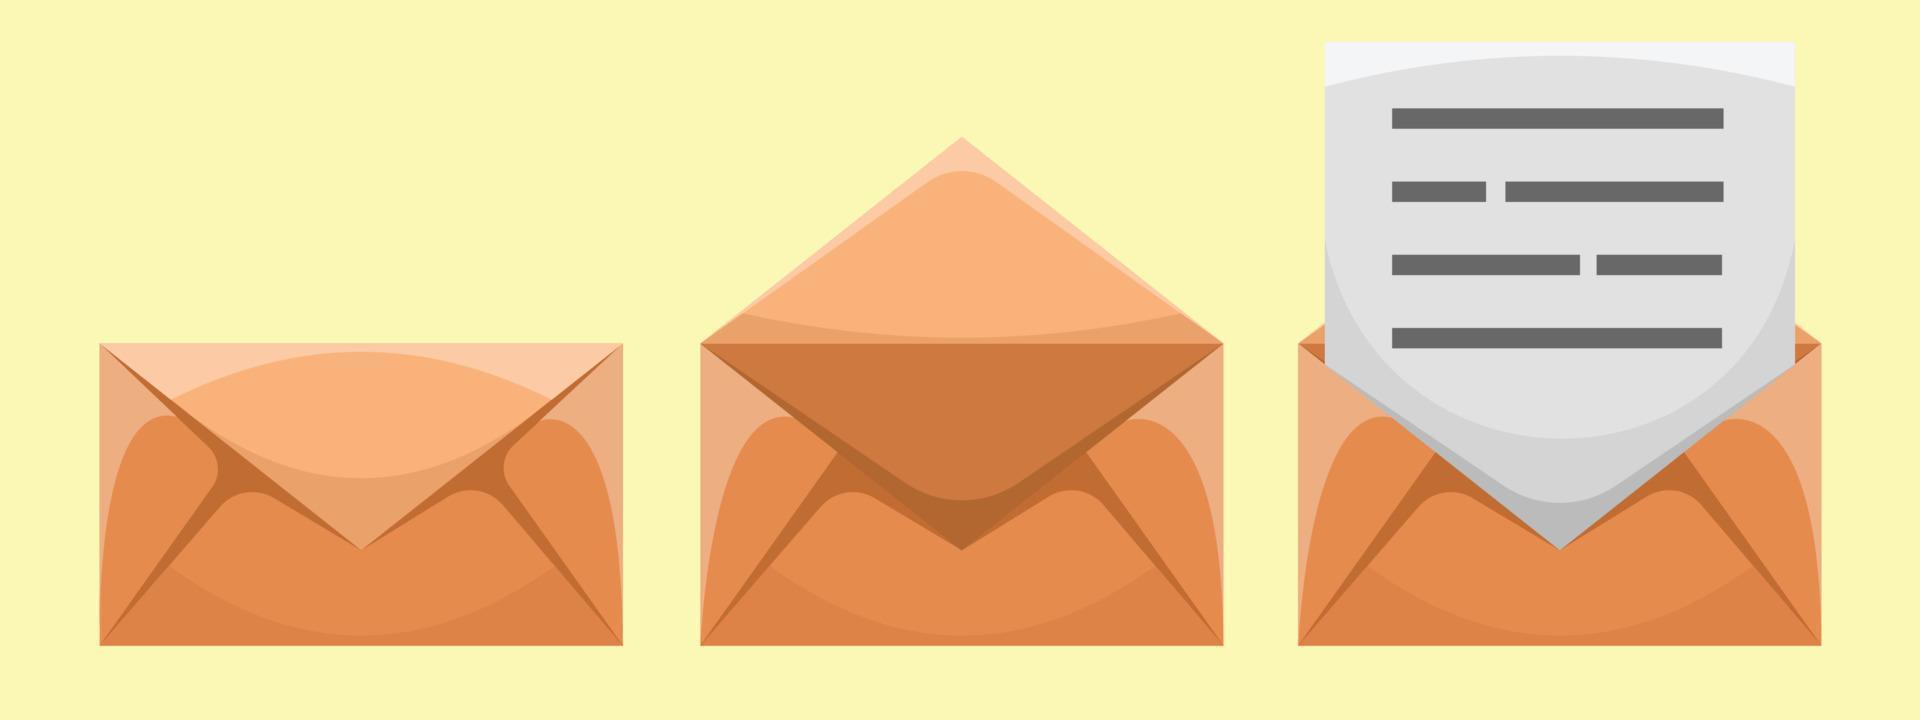 Set of Envelope Mail Vector Illustration